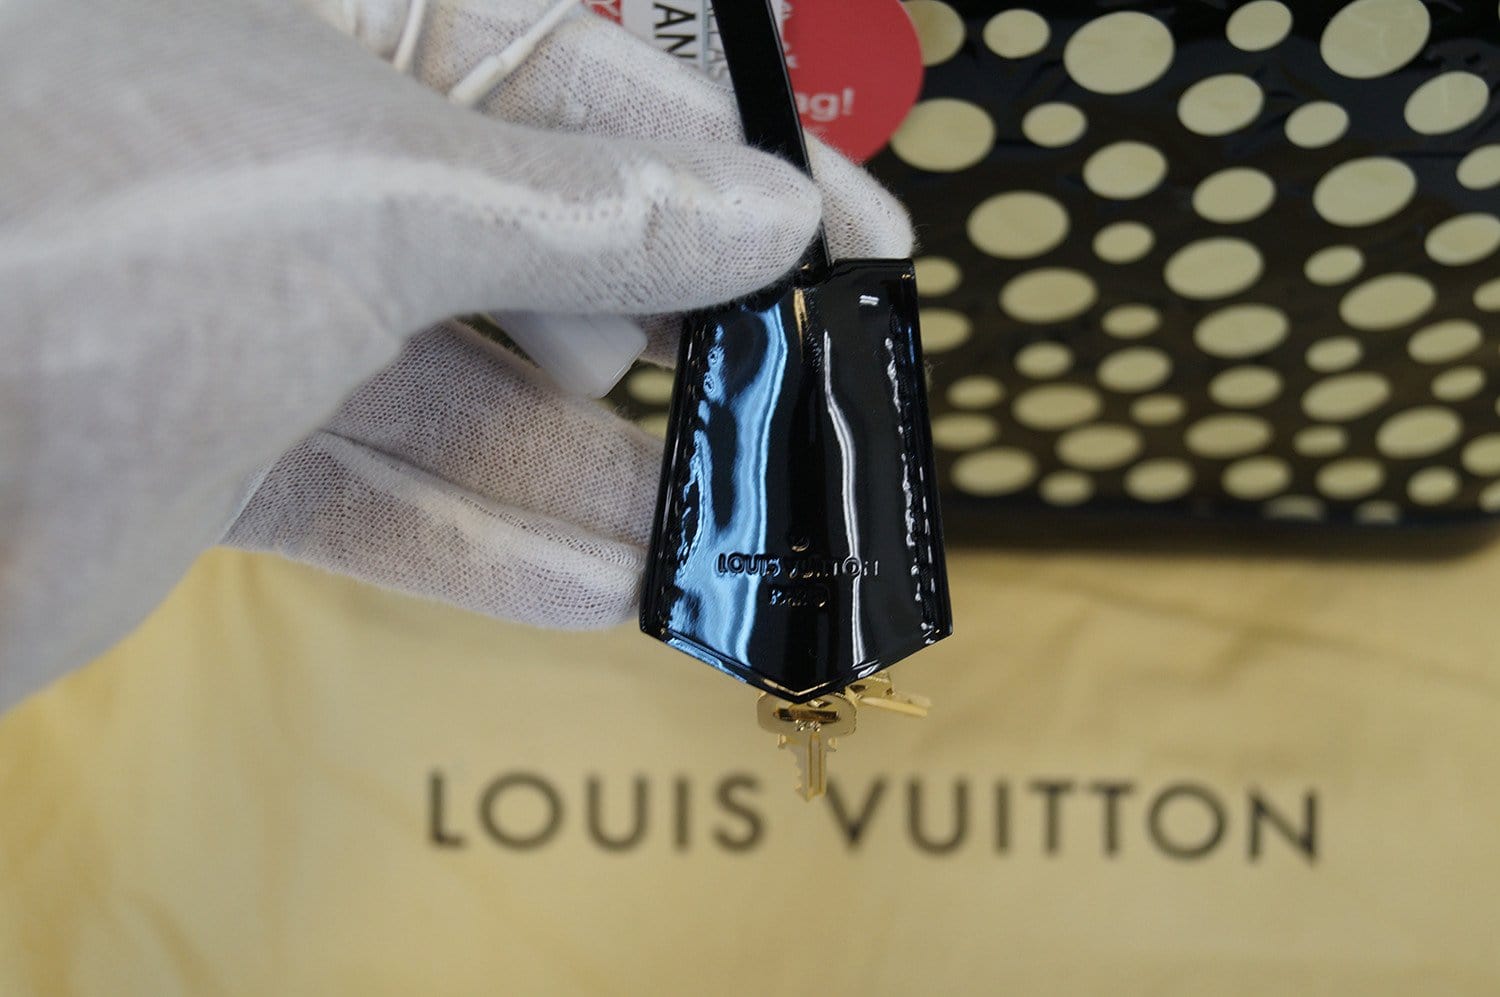 Louis Vuitton Yellow Kusama Infinity Dots Lockit MM